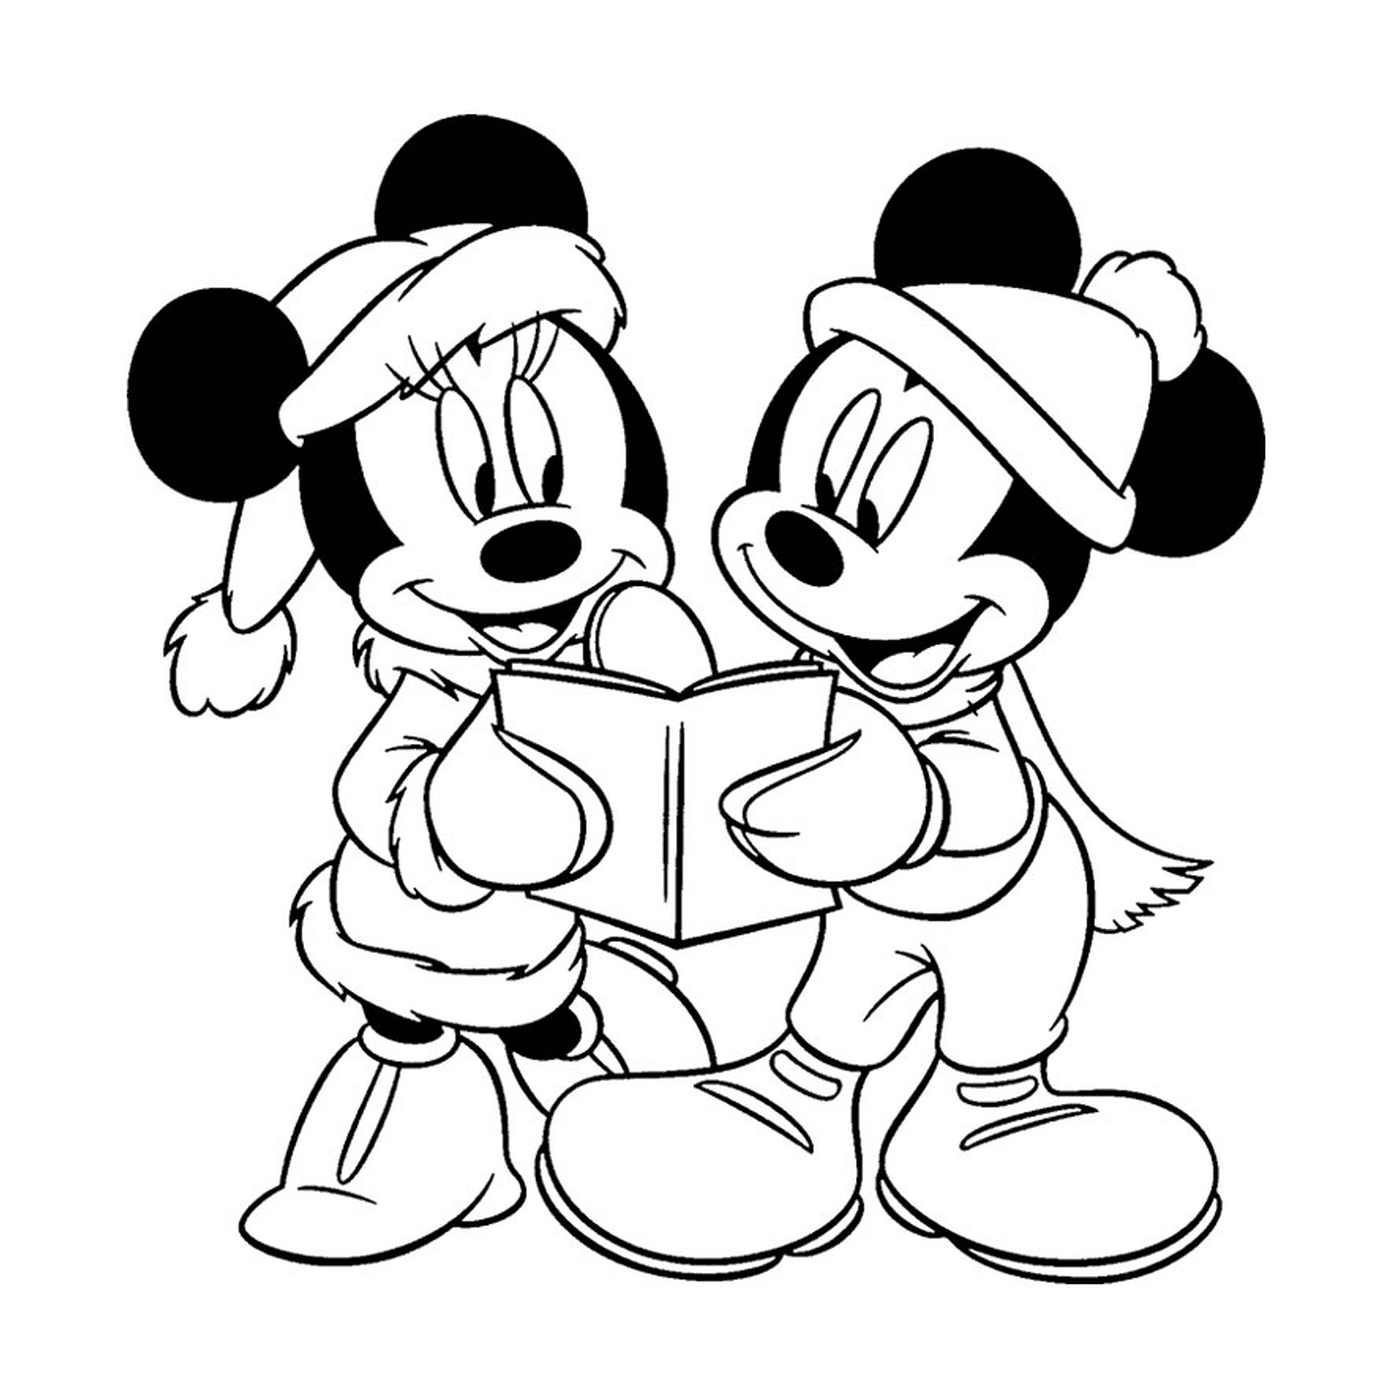  Микки Маус и Минни Маус прочитали книгу вместе 